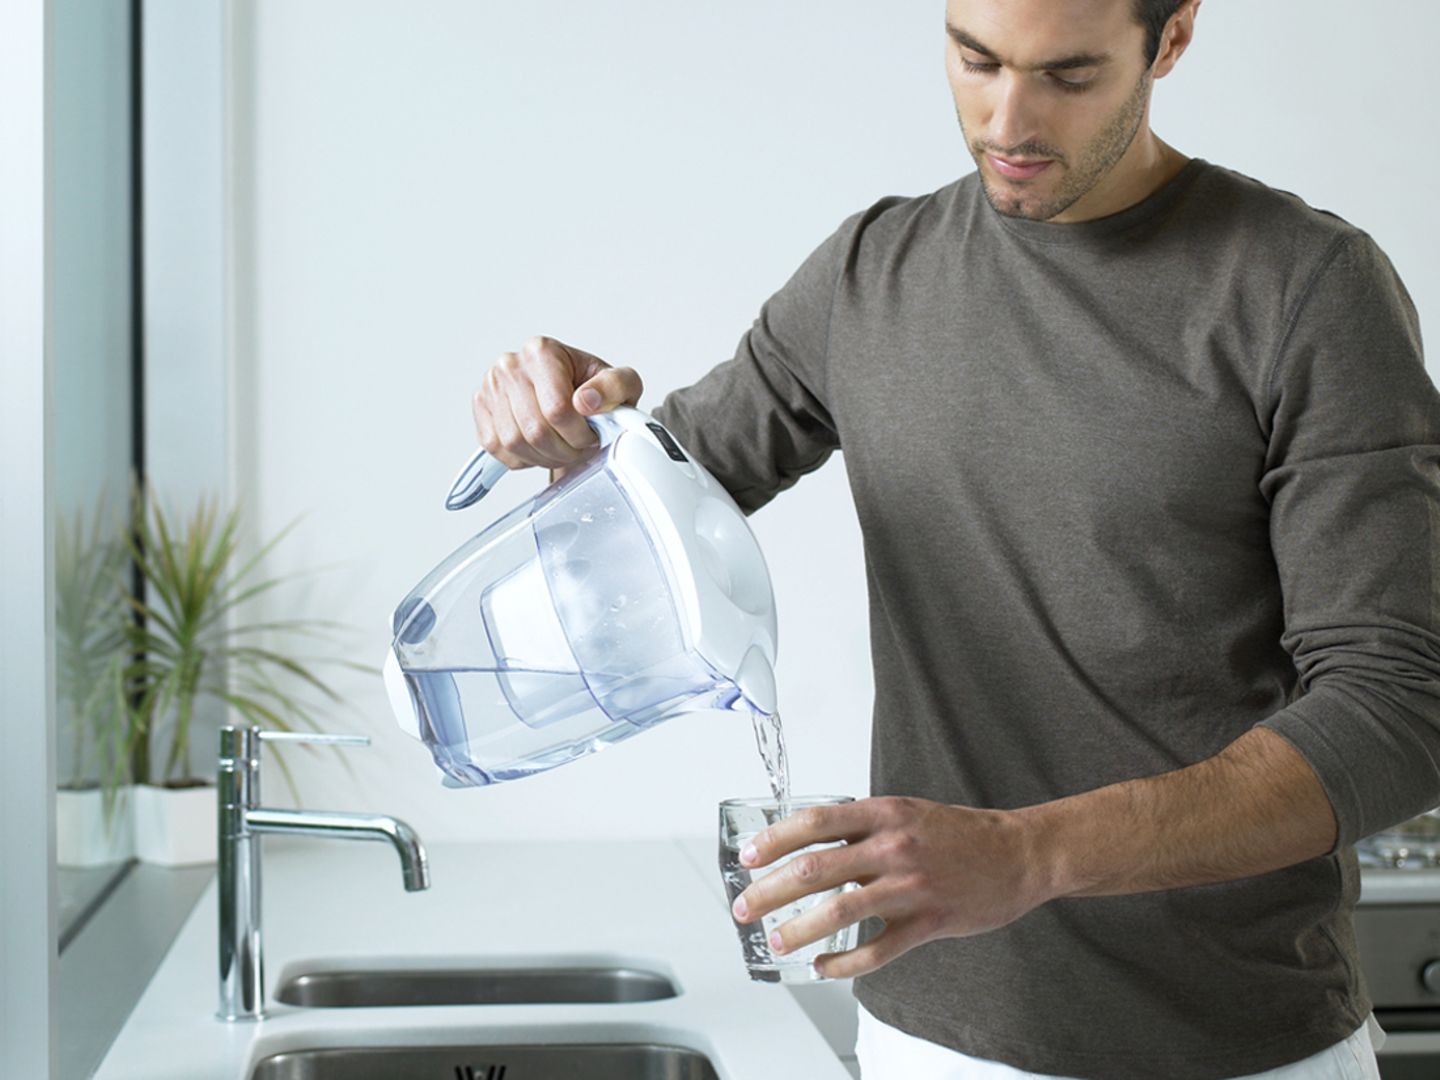 Wasserfilter sind laut Labortest Brutstätte gefährlicher Keime